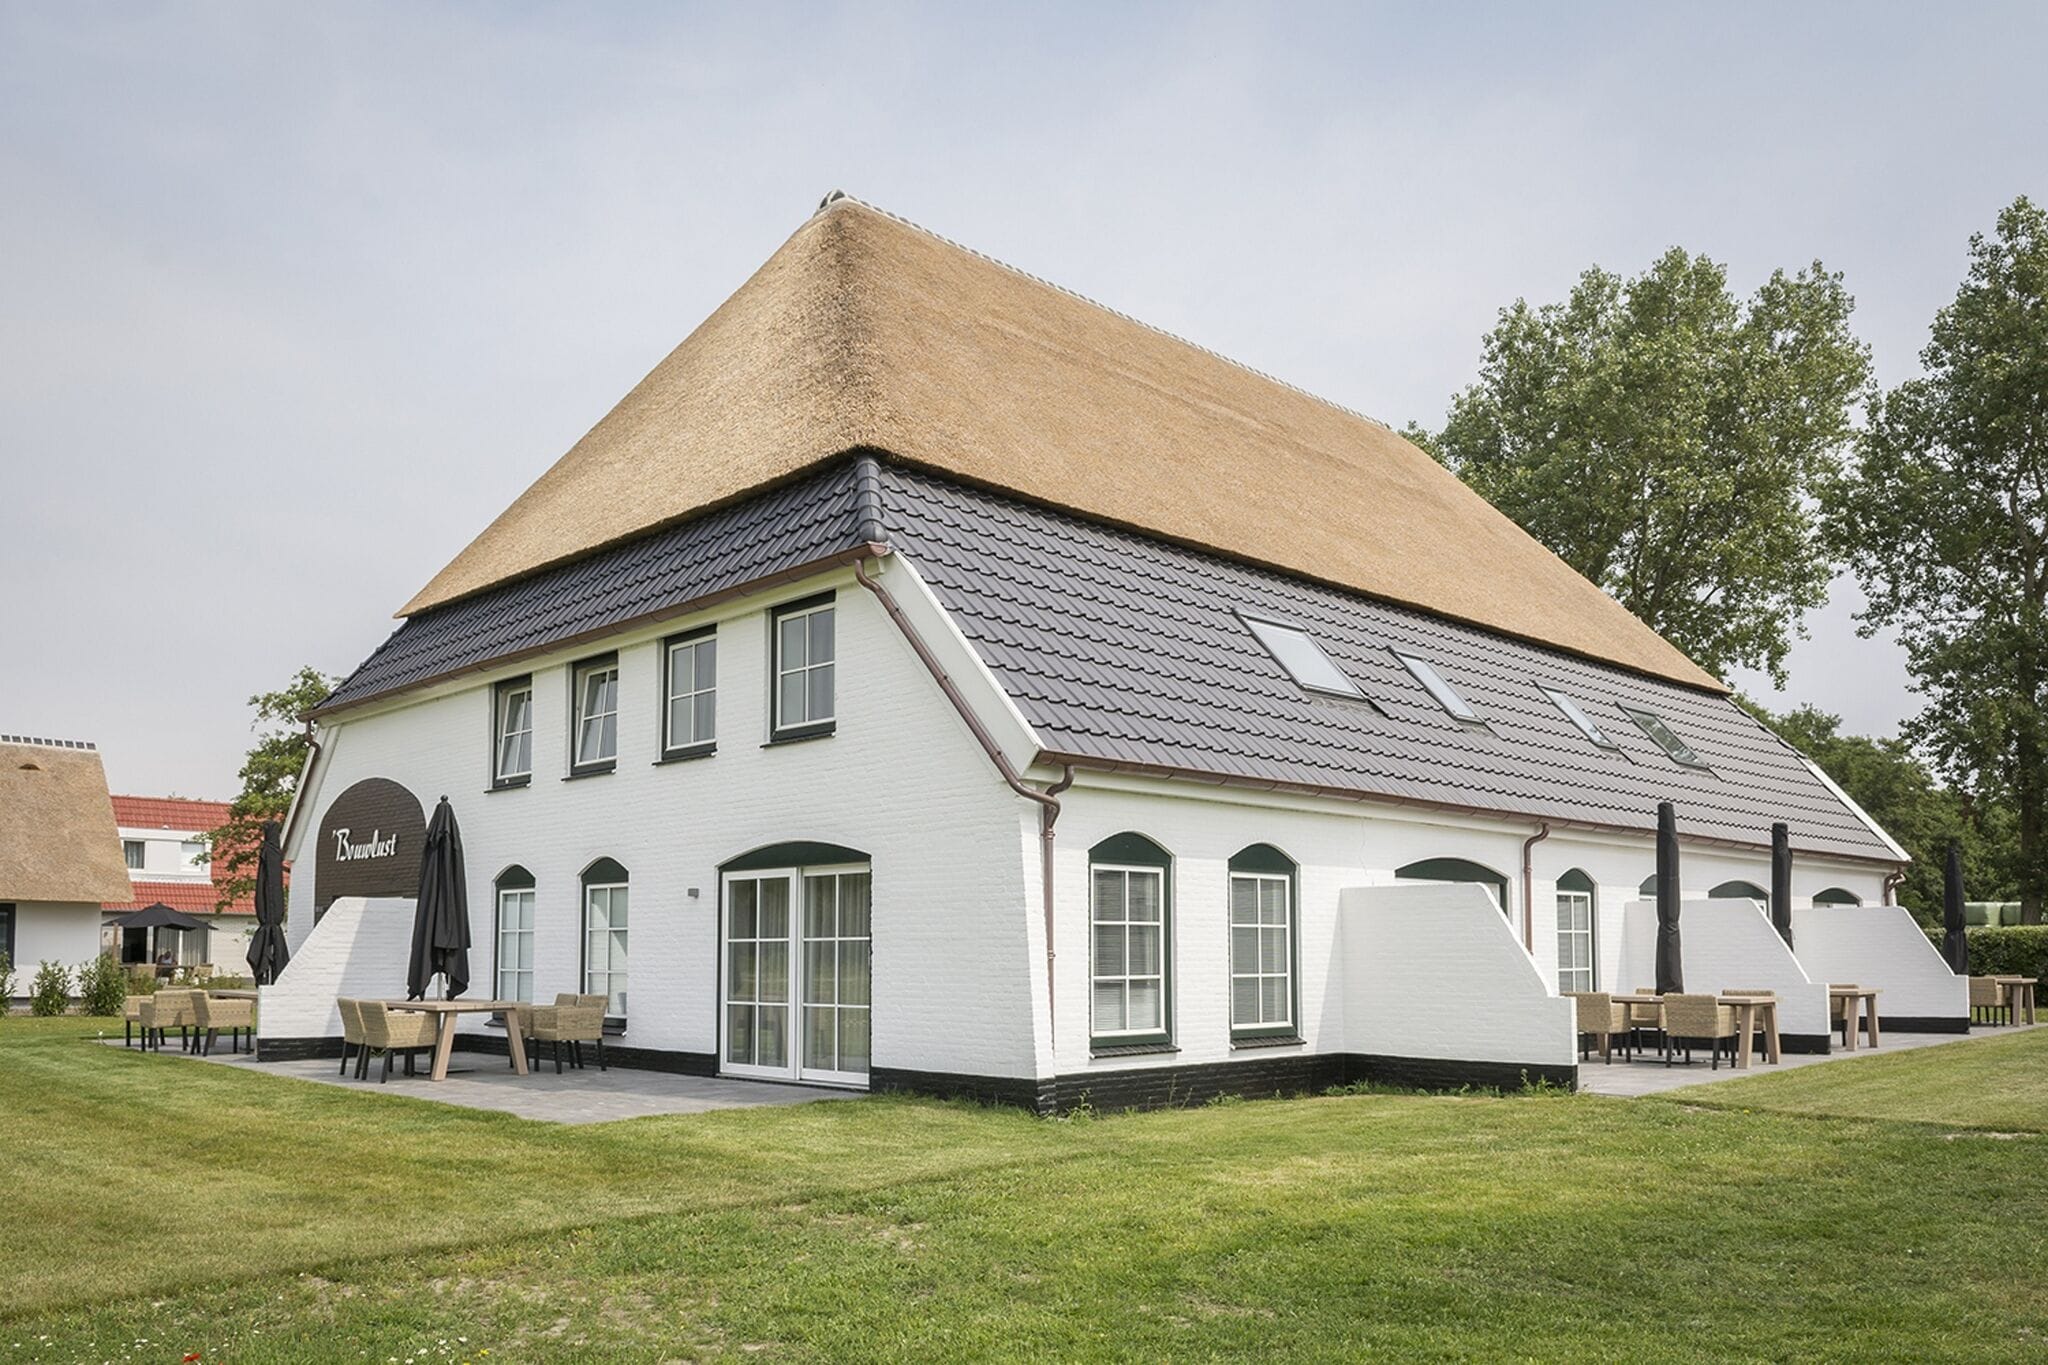 Ferienwohnung auf attraktivem Bauernhof in De Cocksdorp auf der Insel Texel.